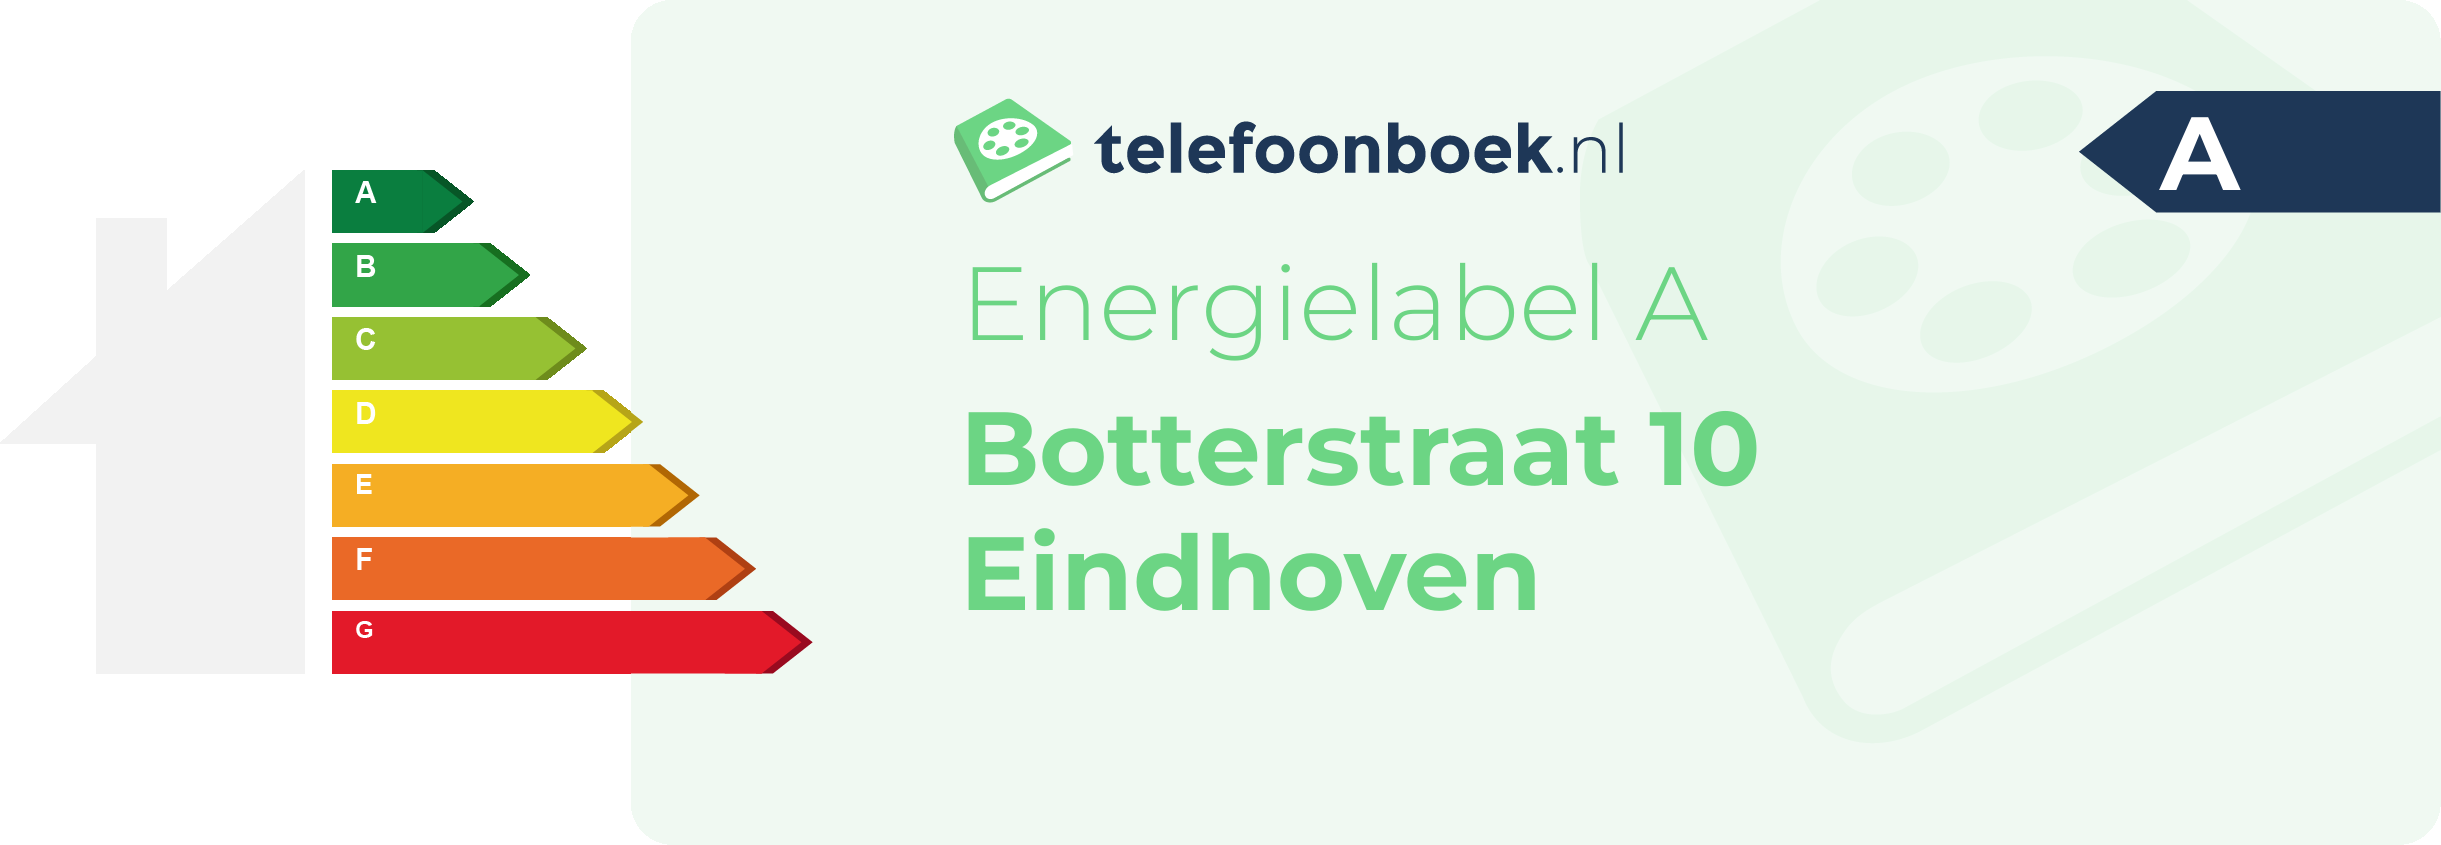 Energielabel Botterstraat 10 Eindhoven